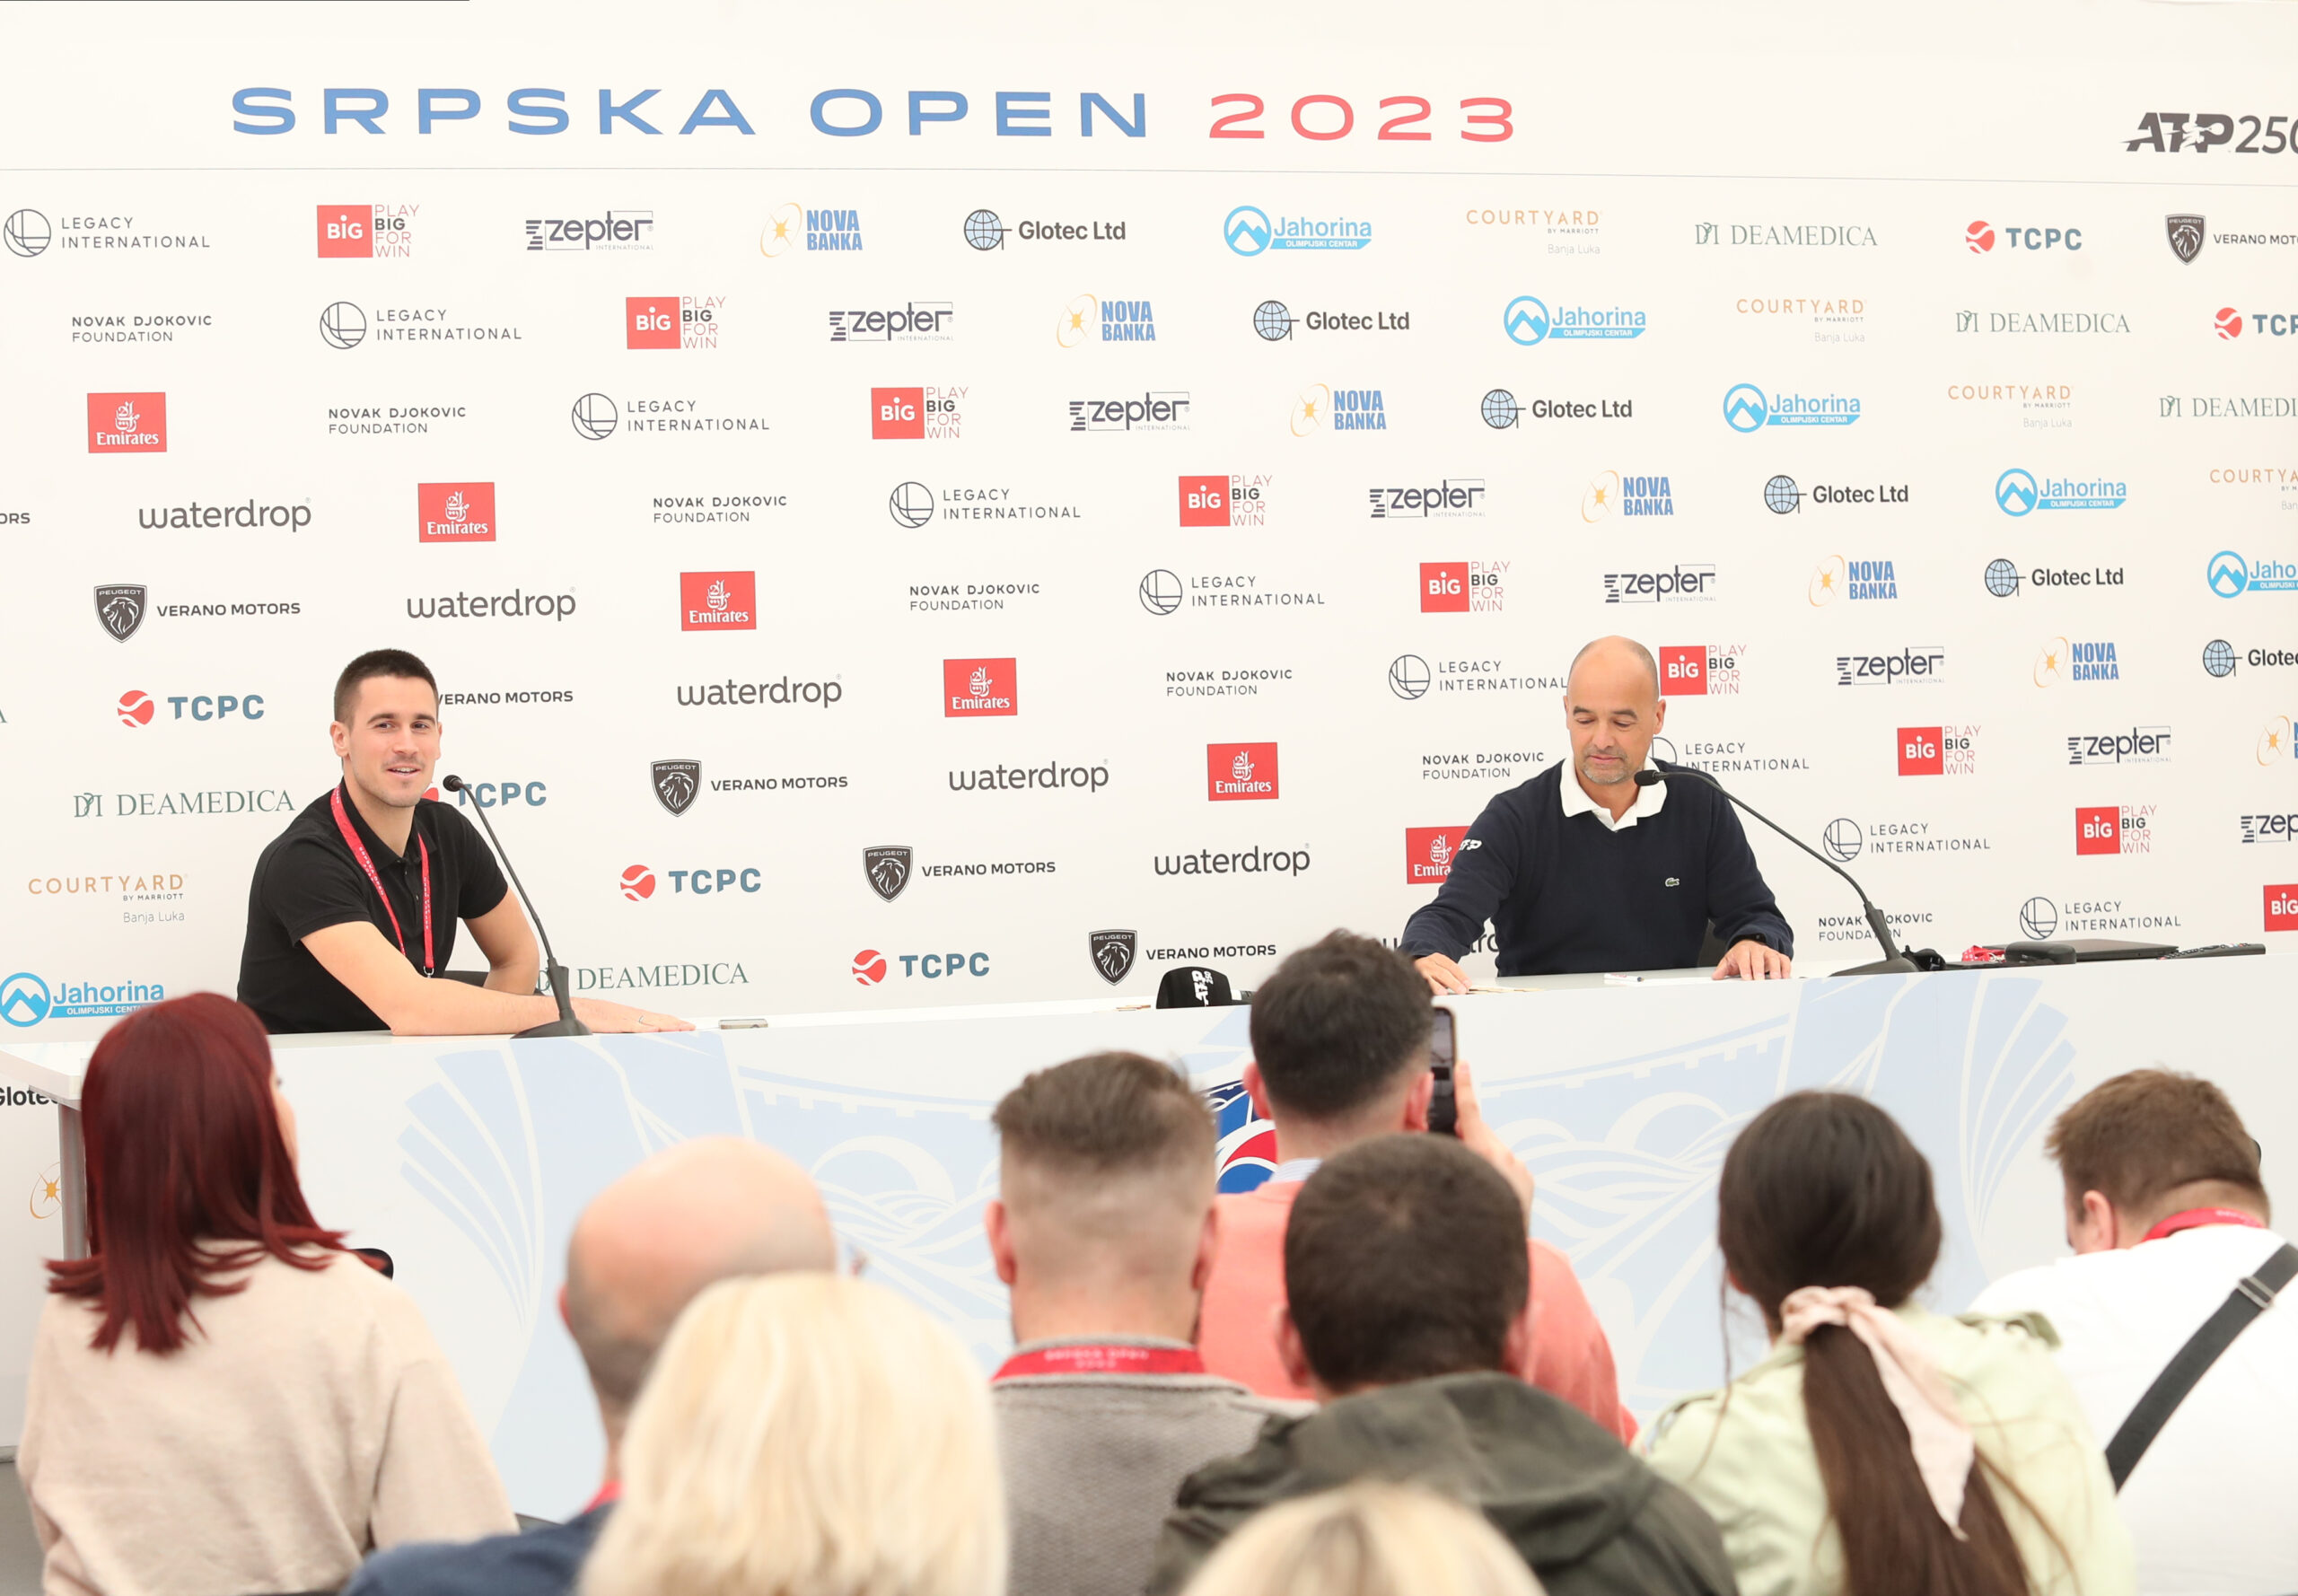 Main draw of Srpska Open 2023 revealed Srpska Open